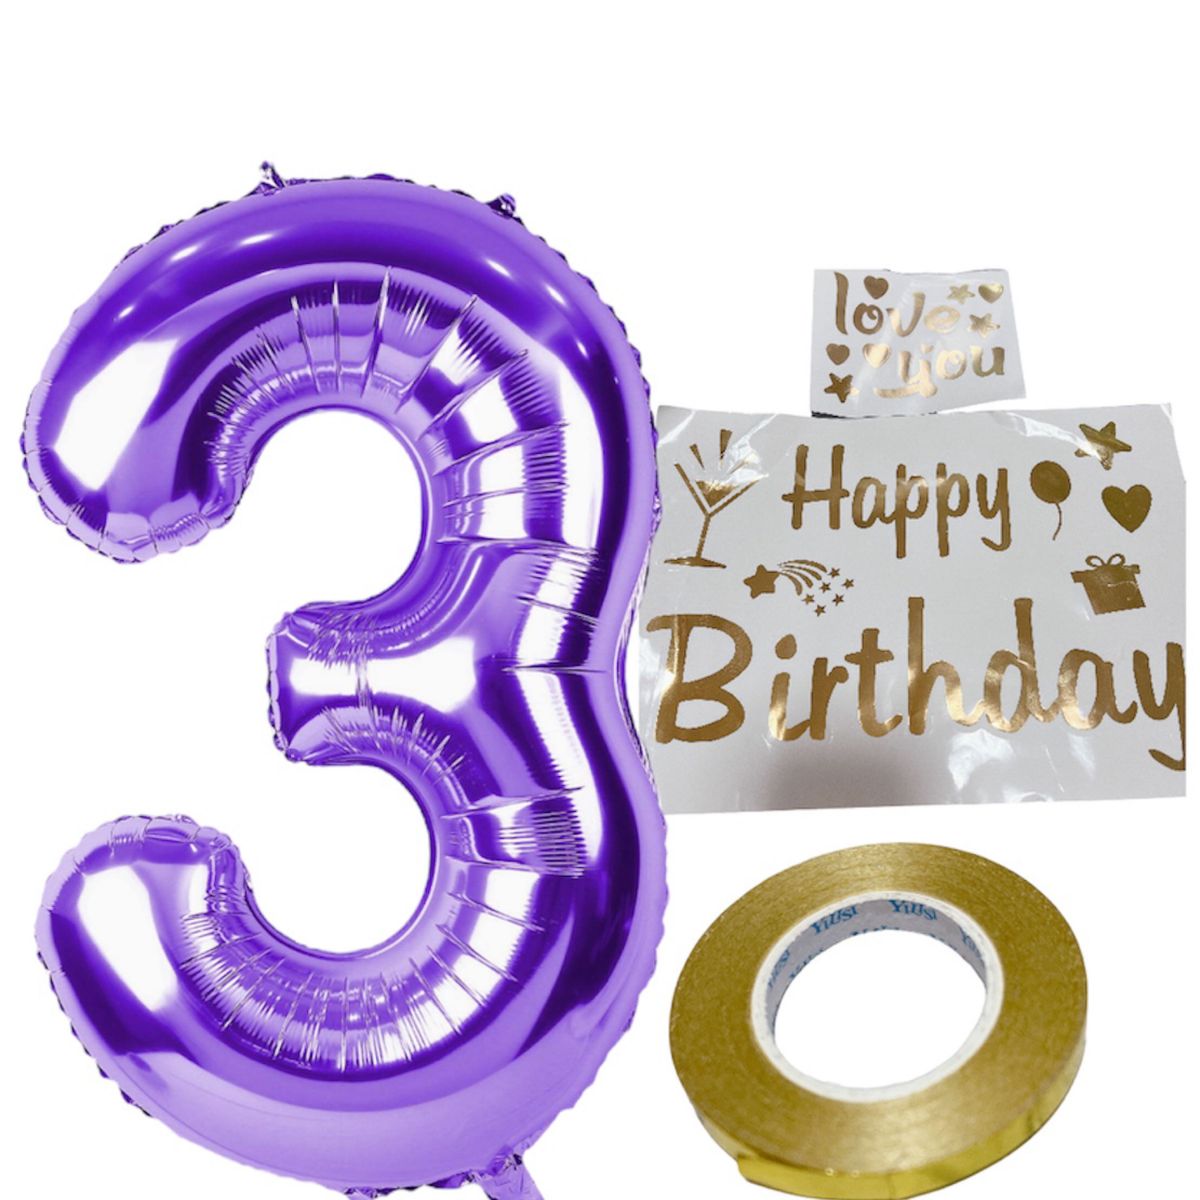 風船 紫 3 バルーン ステッカー シール happy birthday バースデーバルーン 飾り 装飾 誕生日 記念日 子供